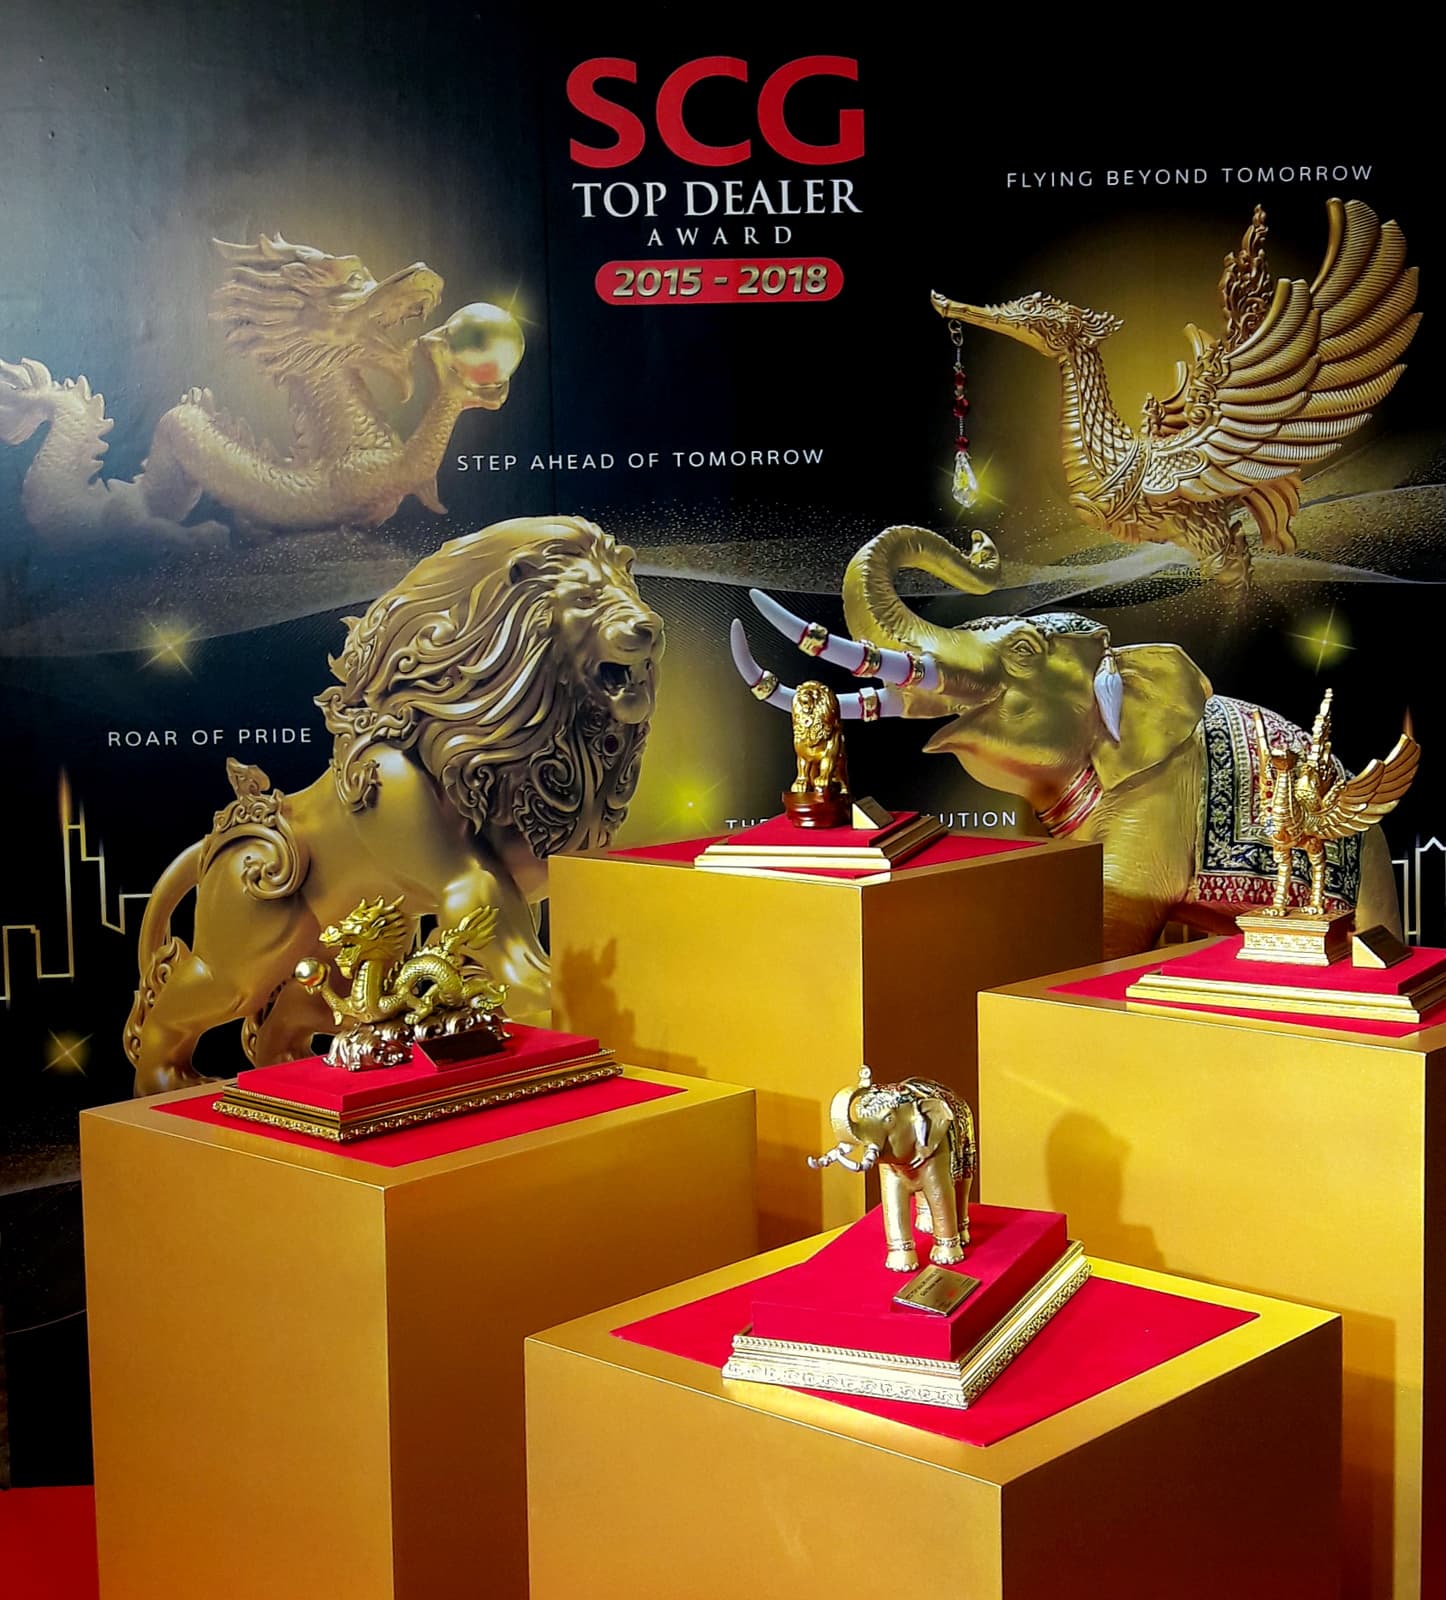 SCG Top Dealer Trophy in 2018